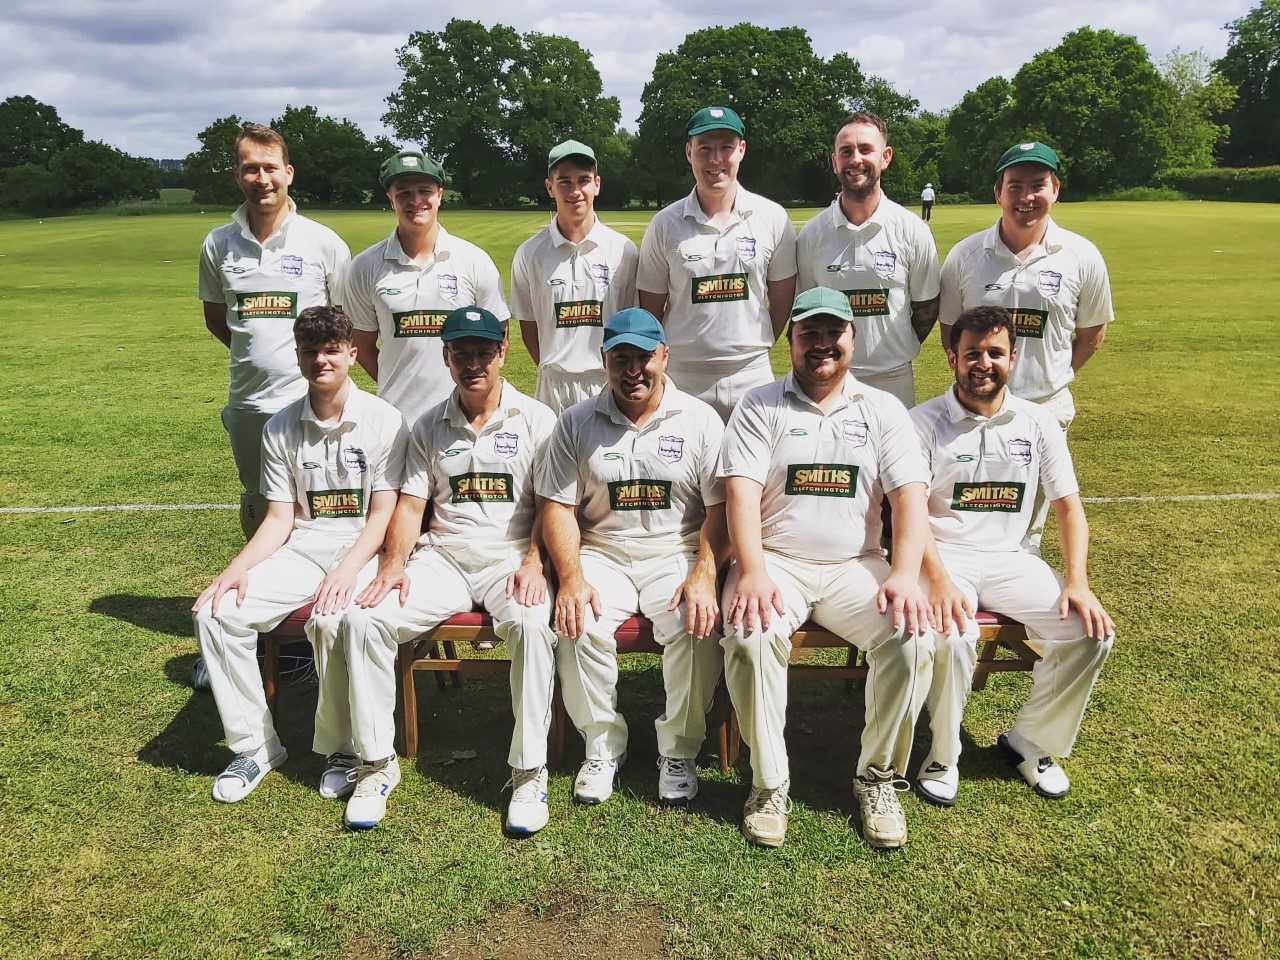 Smiths Sponsorship of Clifton Hampden Cricket Club